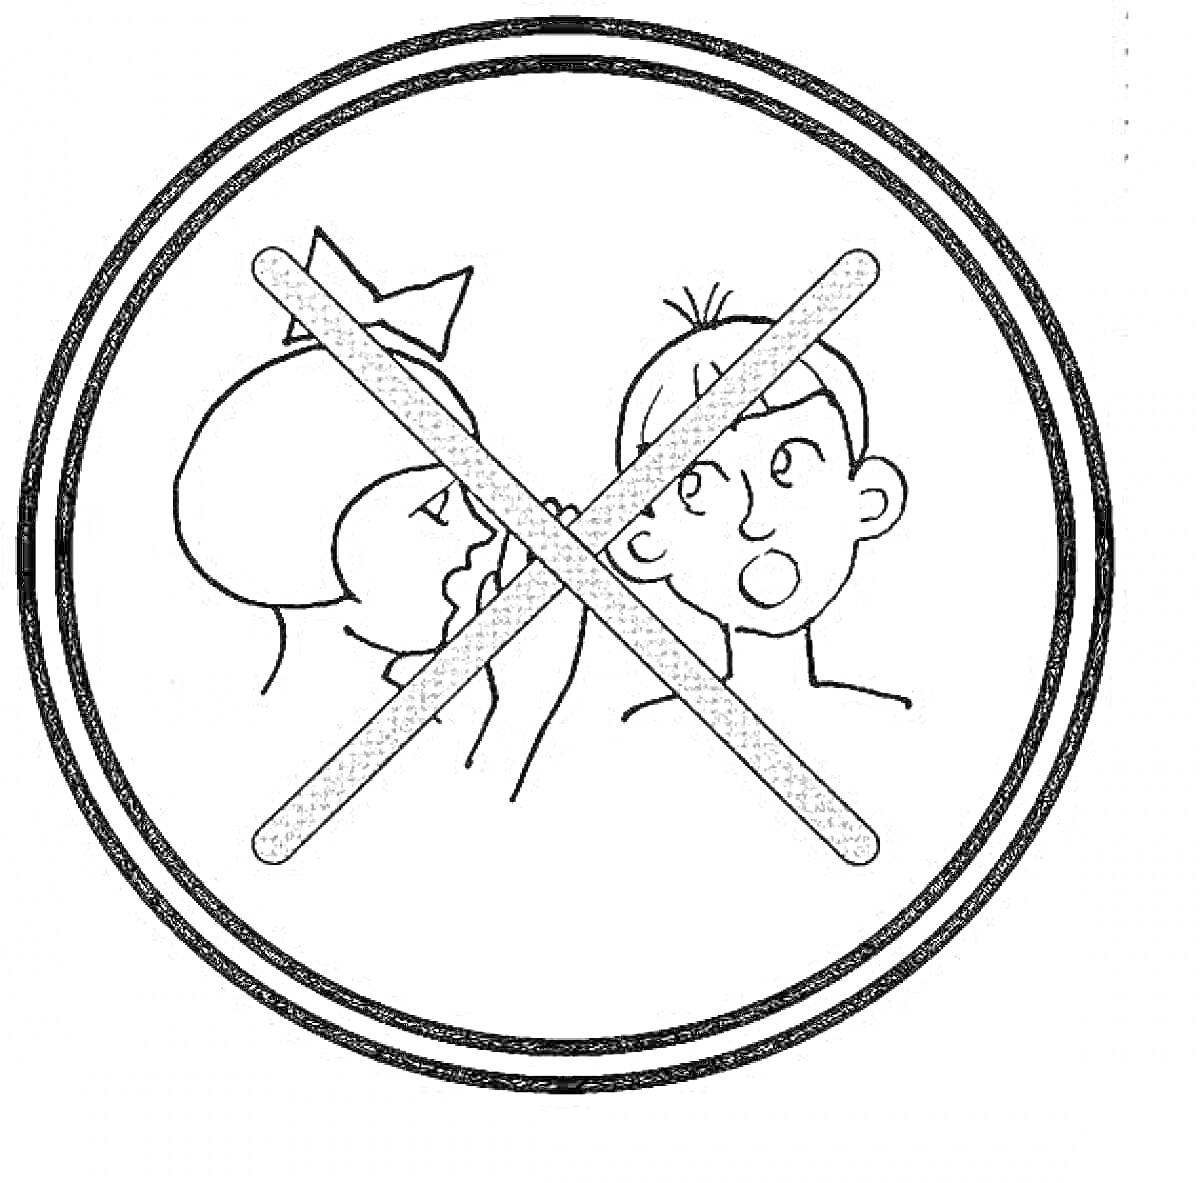 Раскраска запрещено шептаться, изображение мальчика и девочки, перечеркнутое крестиком